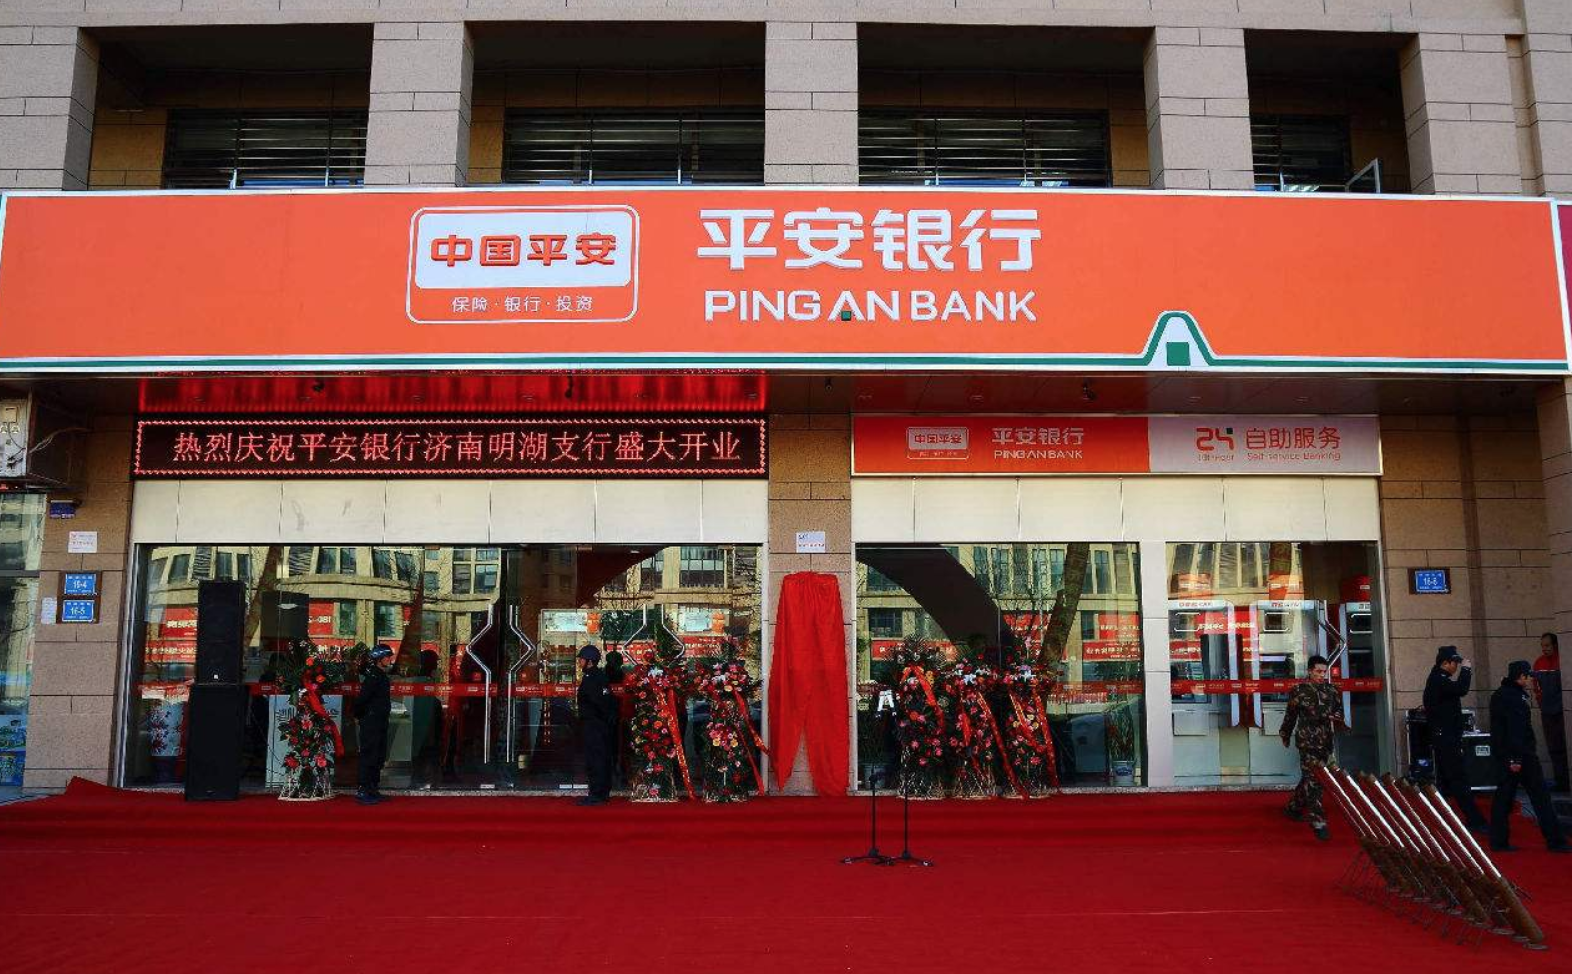 Ping an bank. Pingan китайская компания. Страховые компании в Китае. “Ping an” компания.